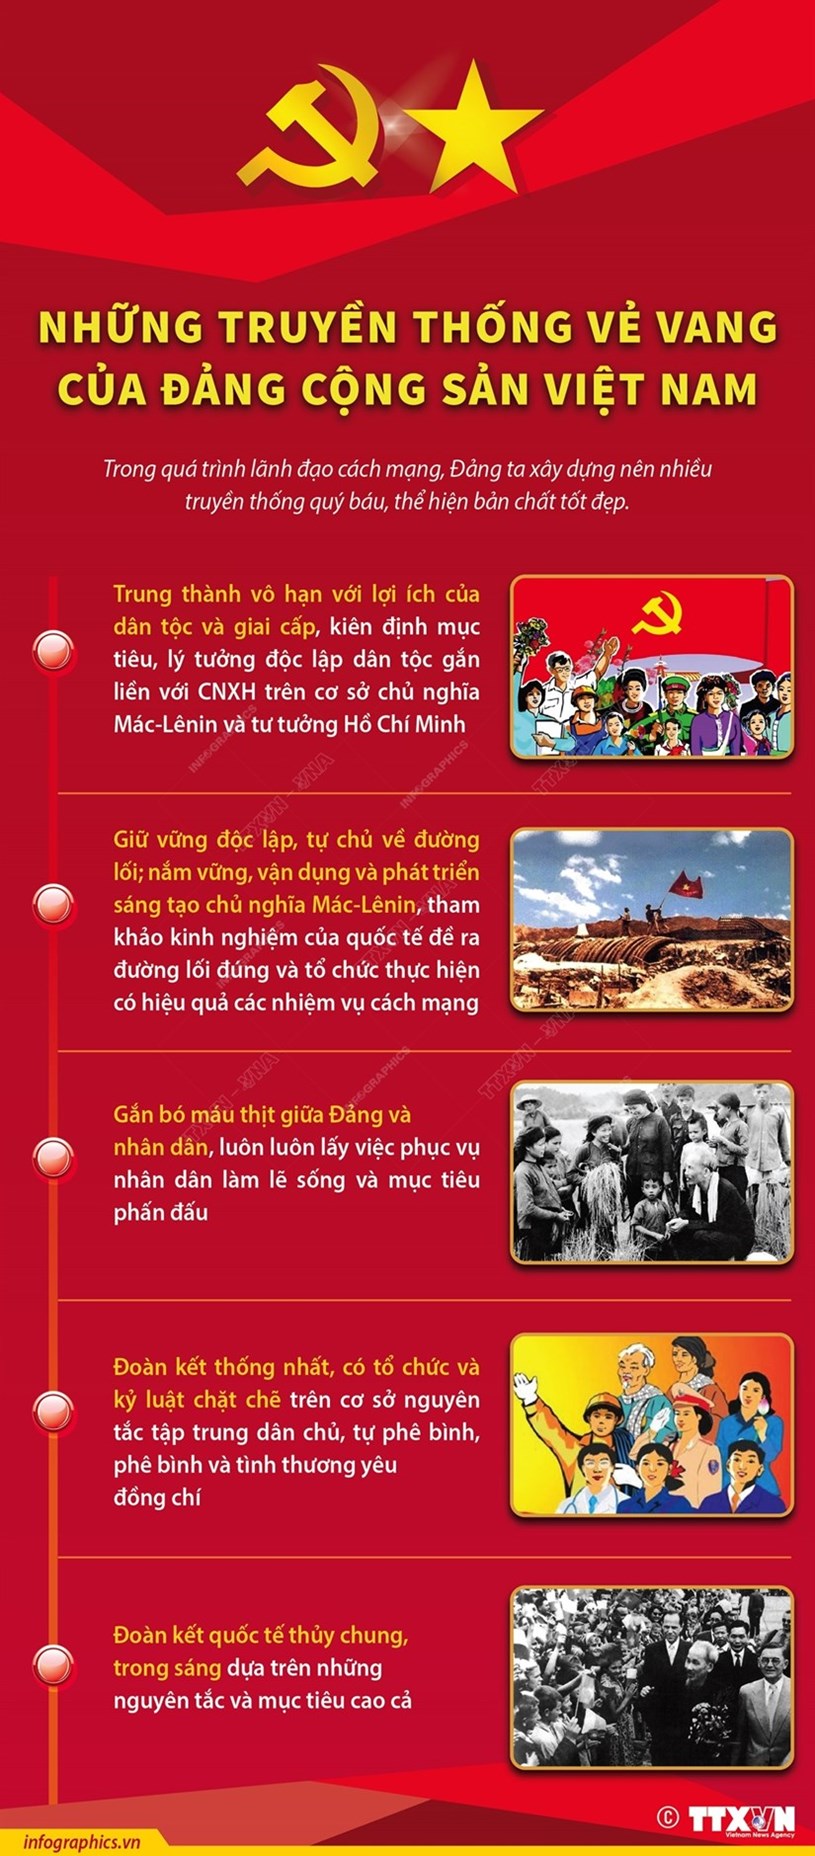 [Infographics] Những truyền thống vẻ vang của Đảng Cộng sản Việt Nam - Ảnh 1